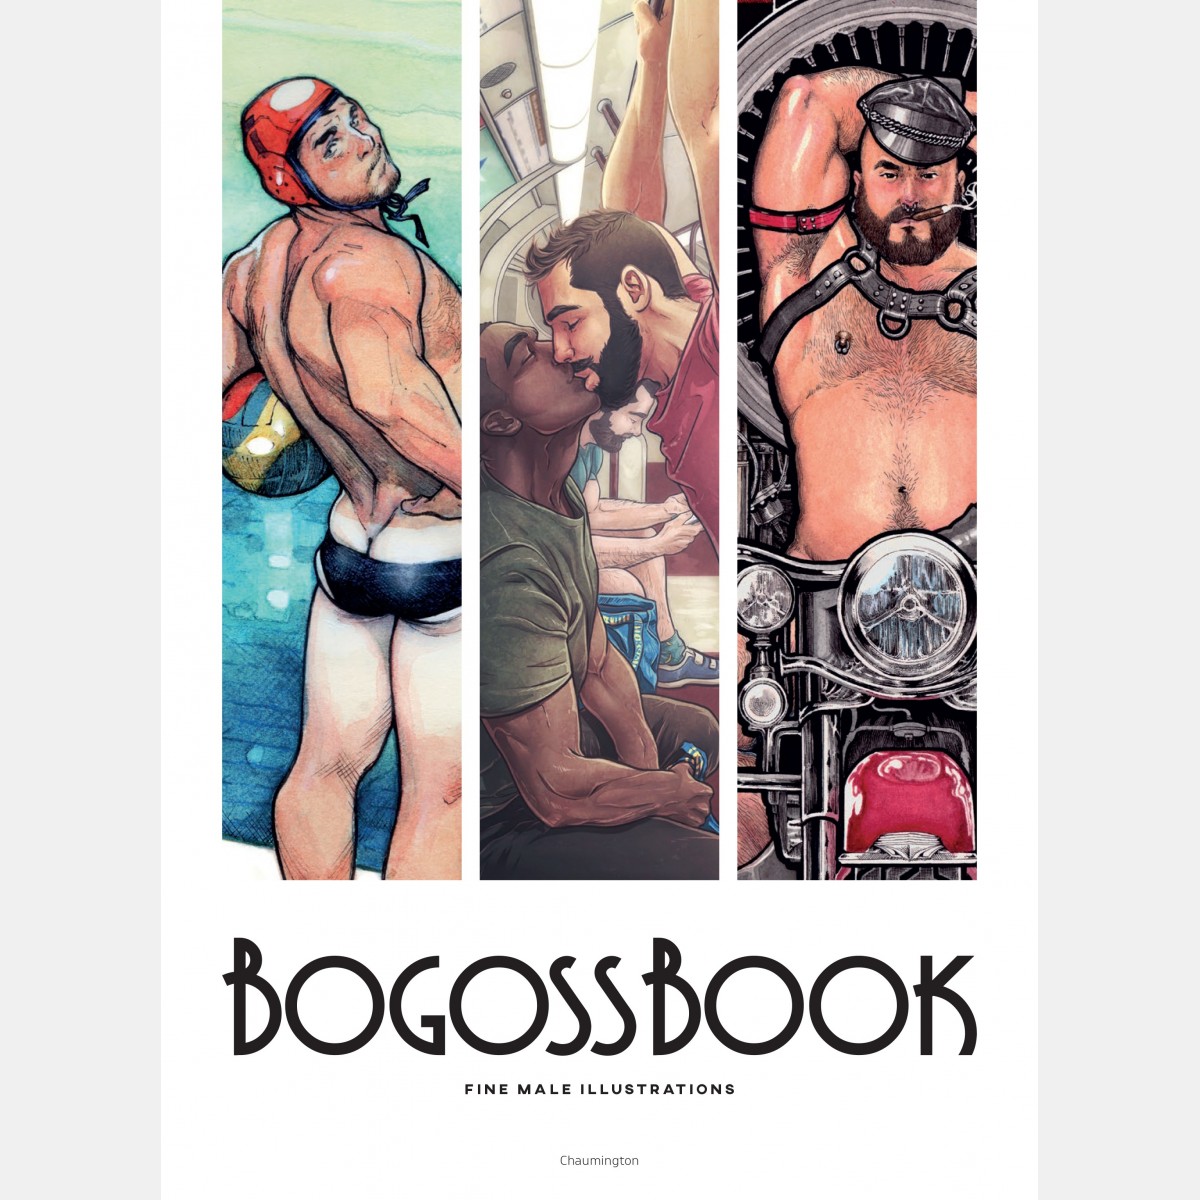 BogossBook vol. 1 - Collective